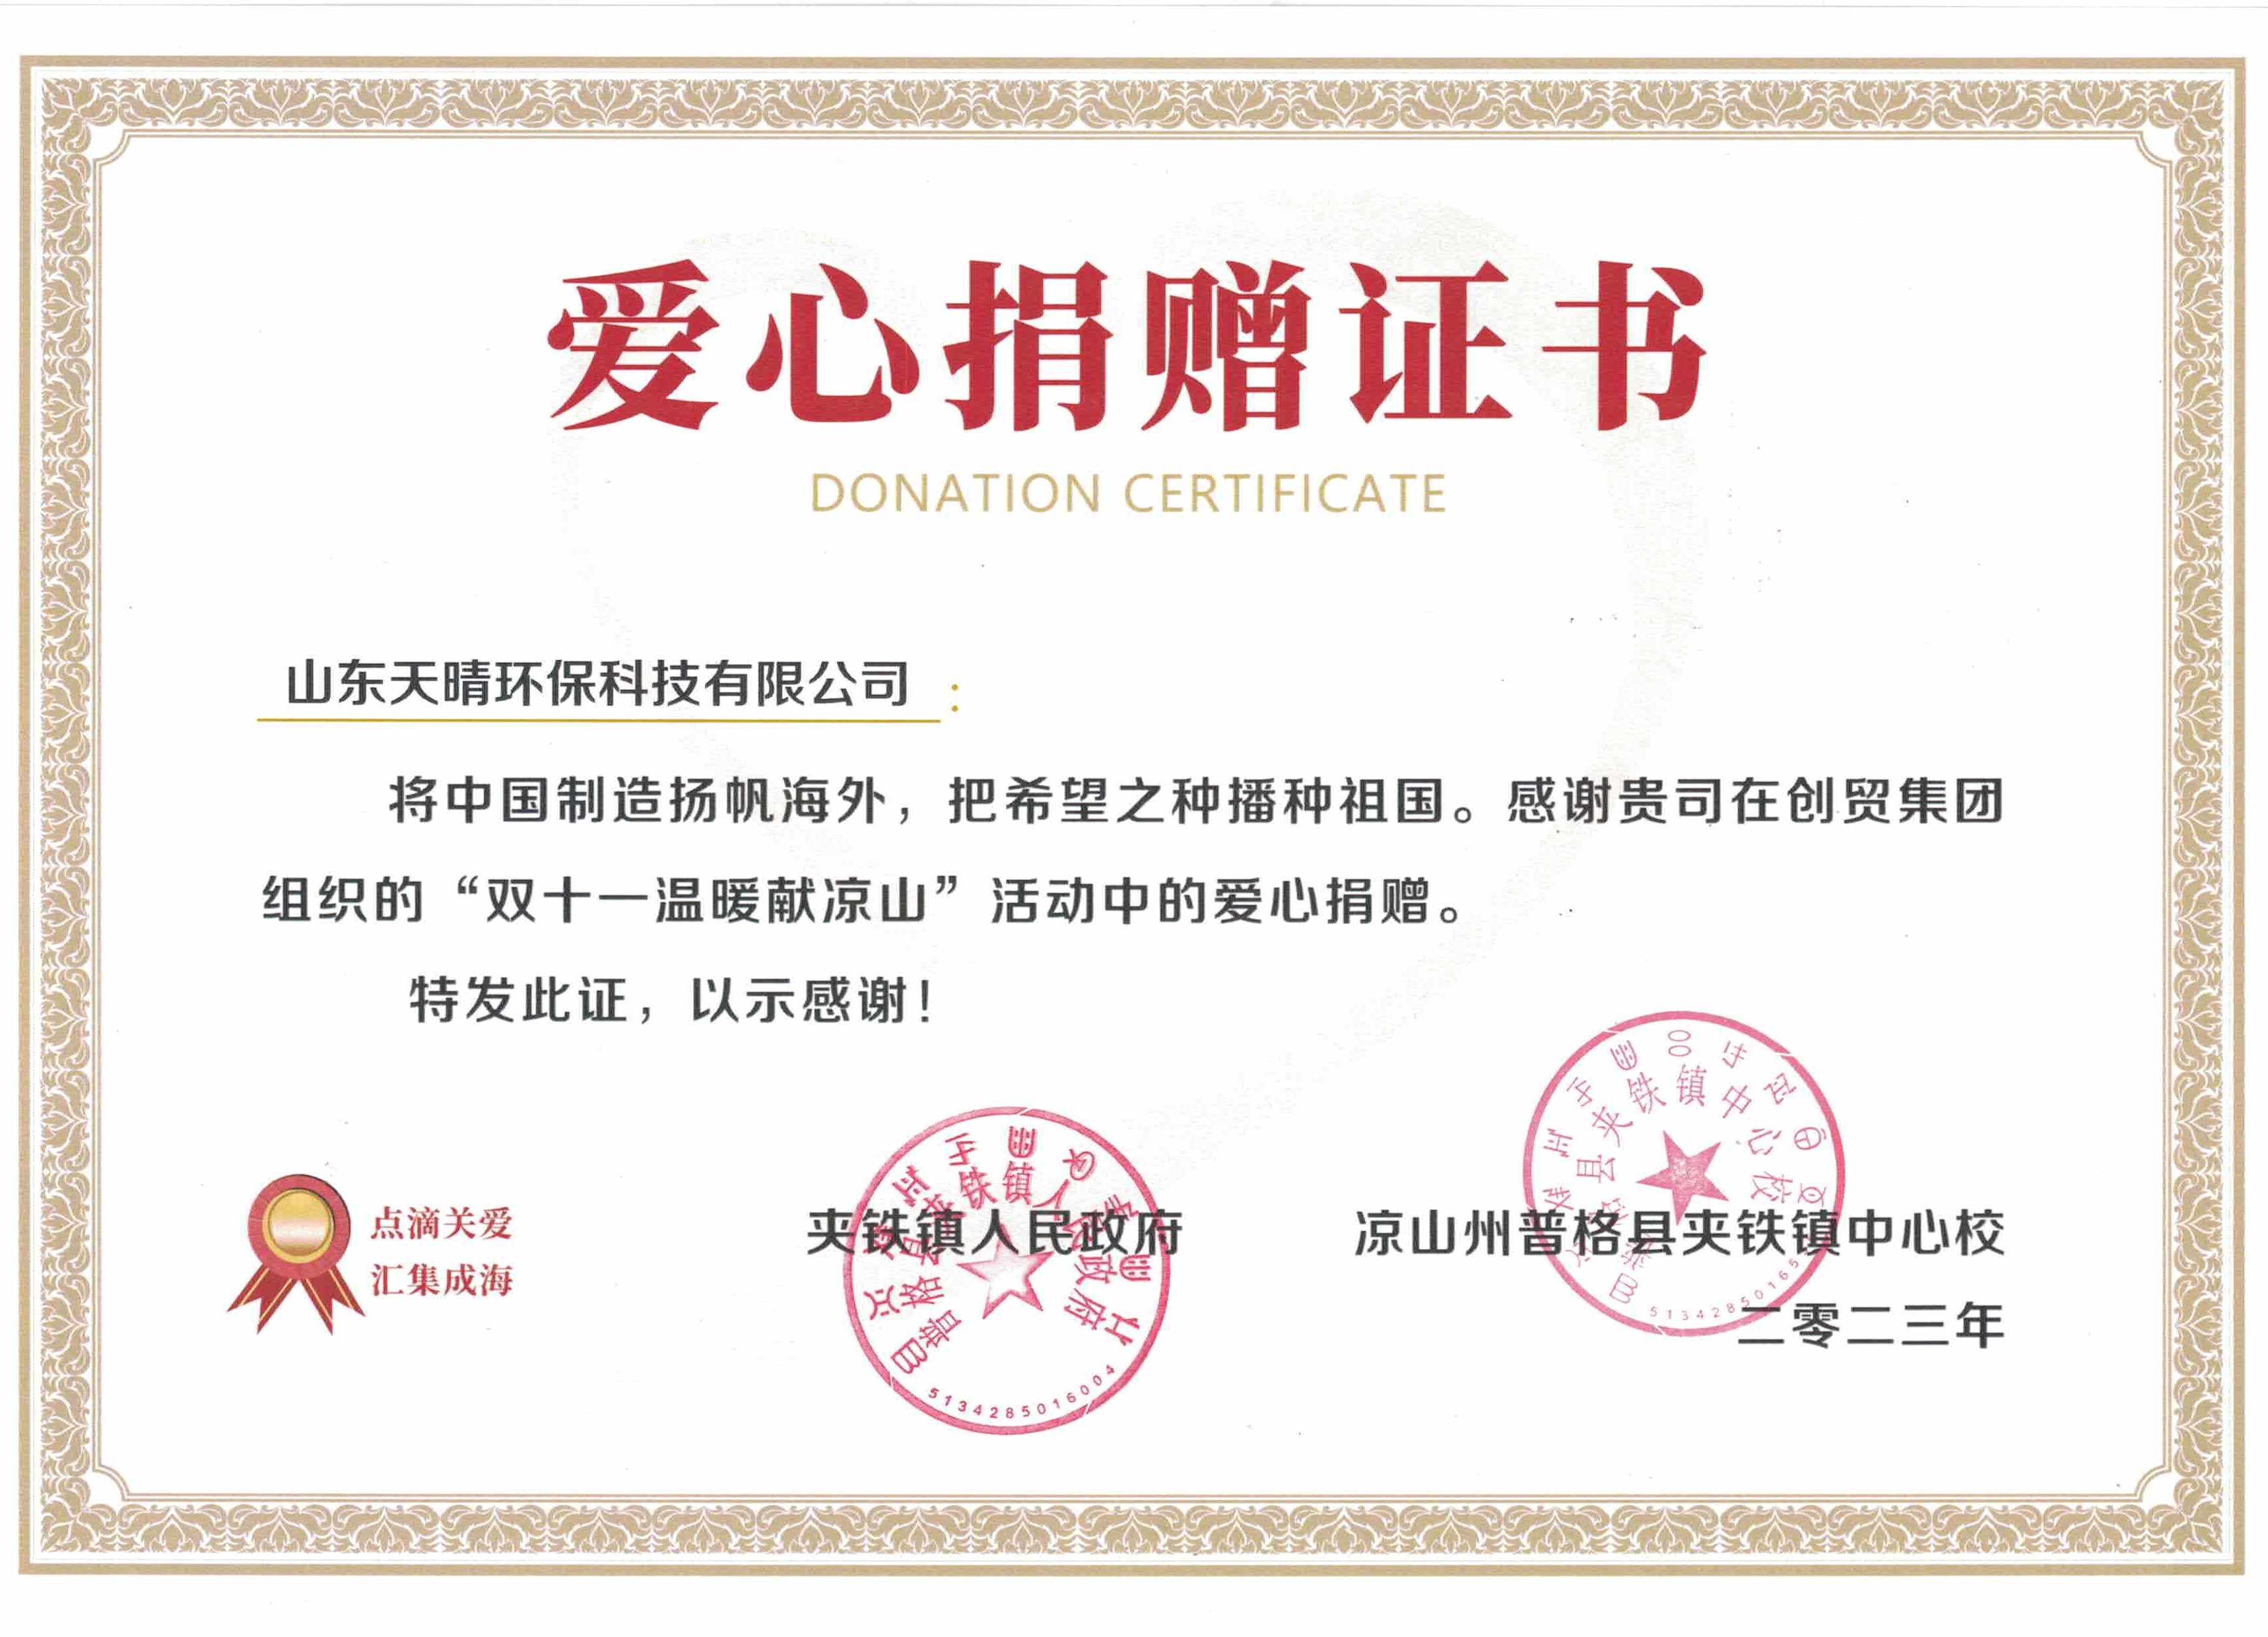 Perusahaan dengan kehangatan dan tanggung jawab sosial-Shandong Tianqing